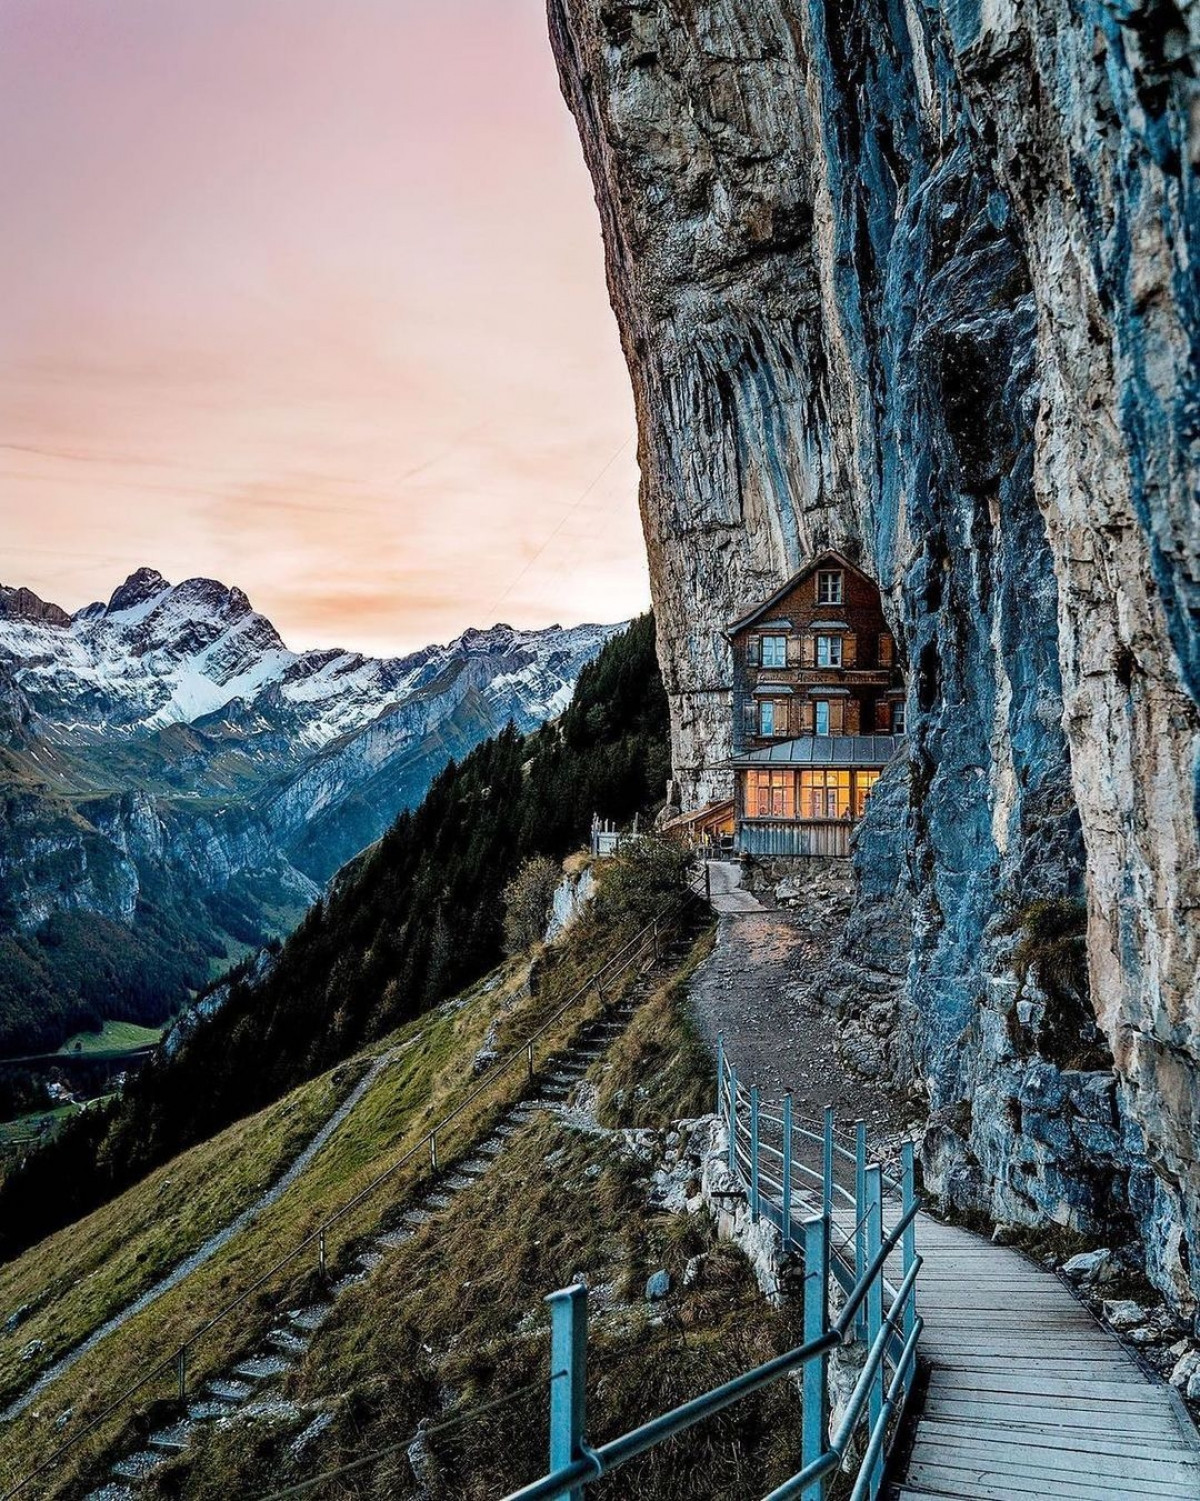 Nằm ở độ cao 100 m và tựa vào vách núi, nhà hàng trên núi Äscher (Thụy Sĩ) là điểm dừng chân hoàn hảo cho những du khách gan dạ. Nhà hàng nằm trên hành trình đi bộ leo núi qua dãy Alps, ngang qua hồ Seealpsee tuyệt đẹp.